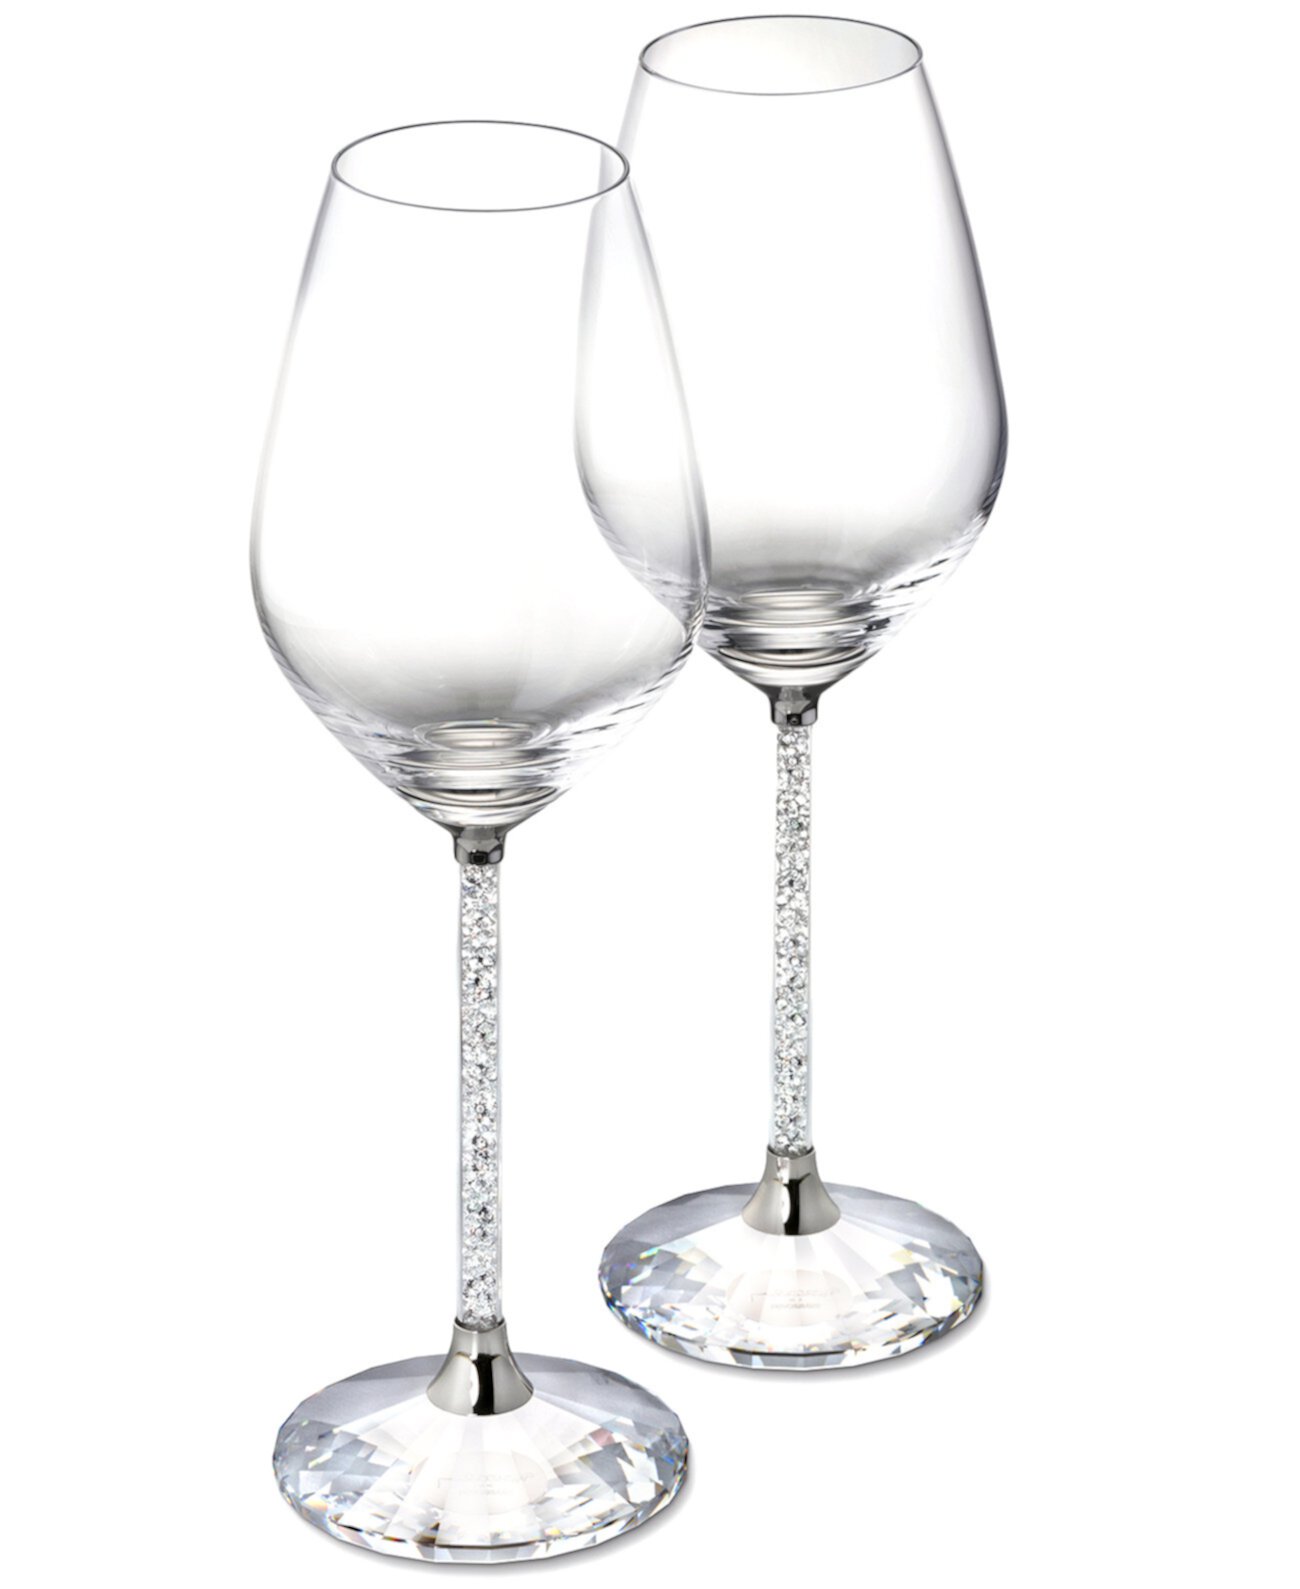 Кристаллические бокалы для красного вина, набор из 2 шт. Swarovski